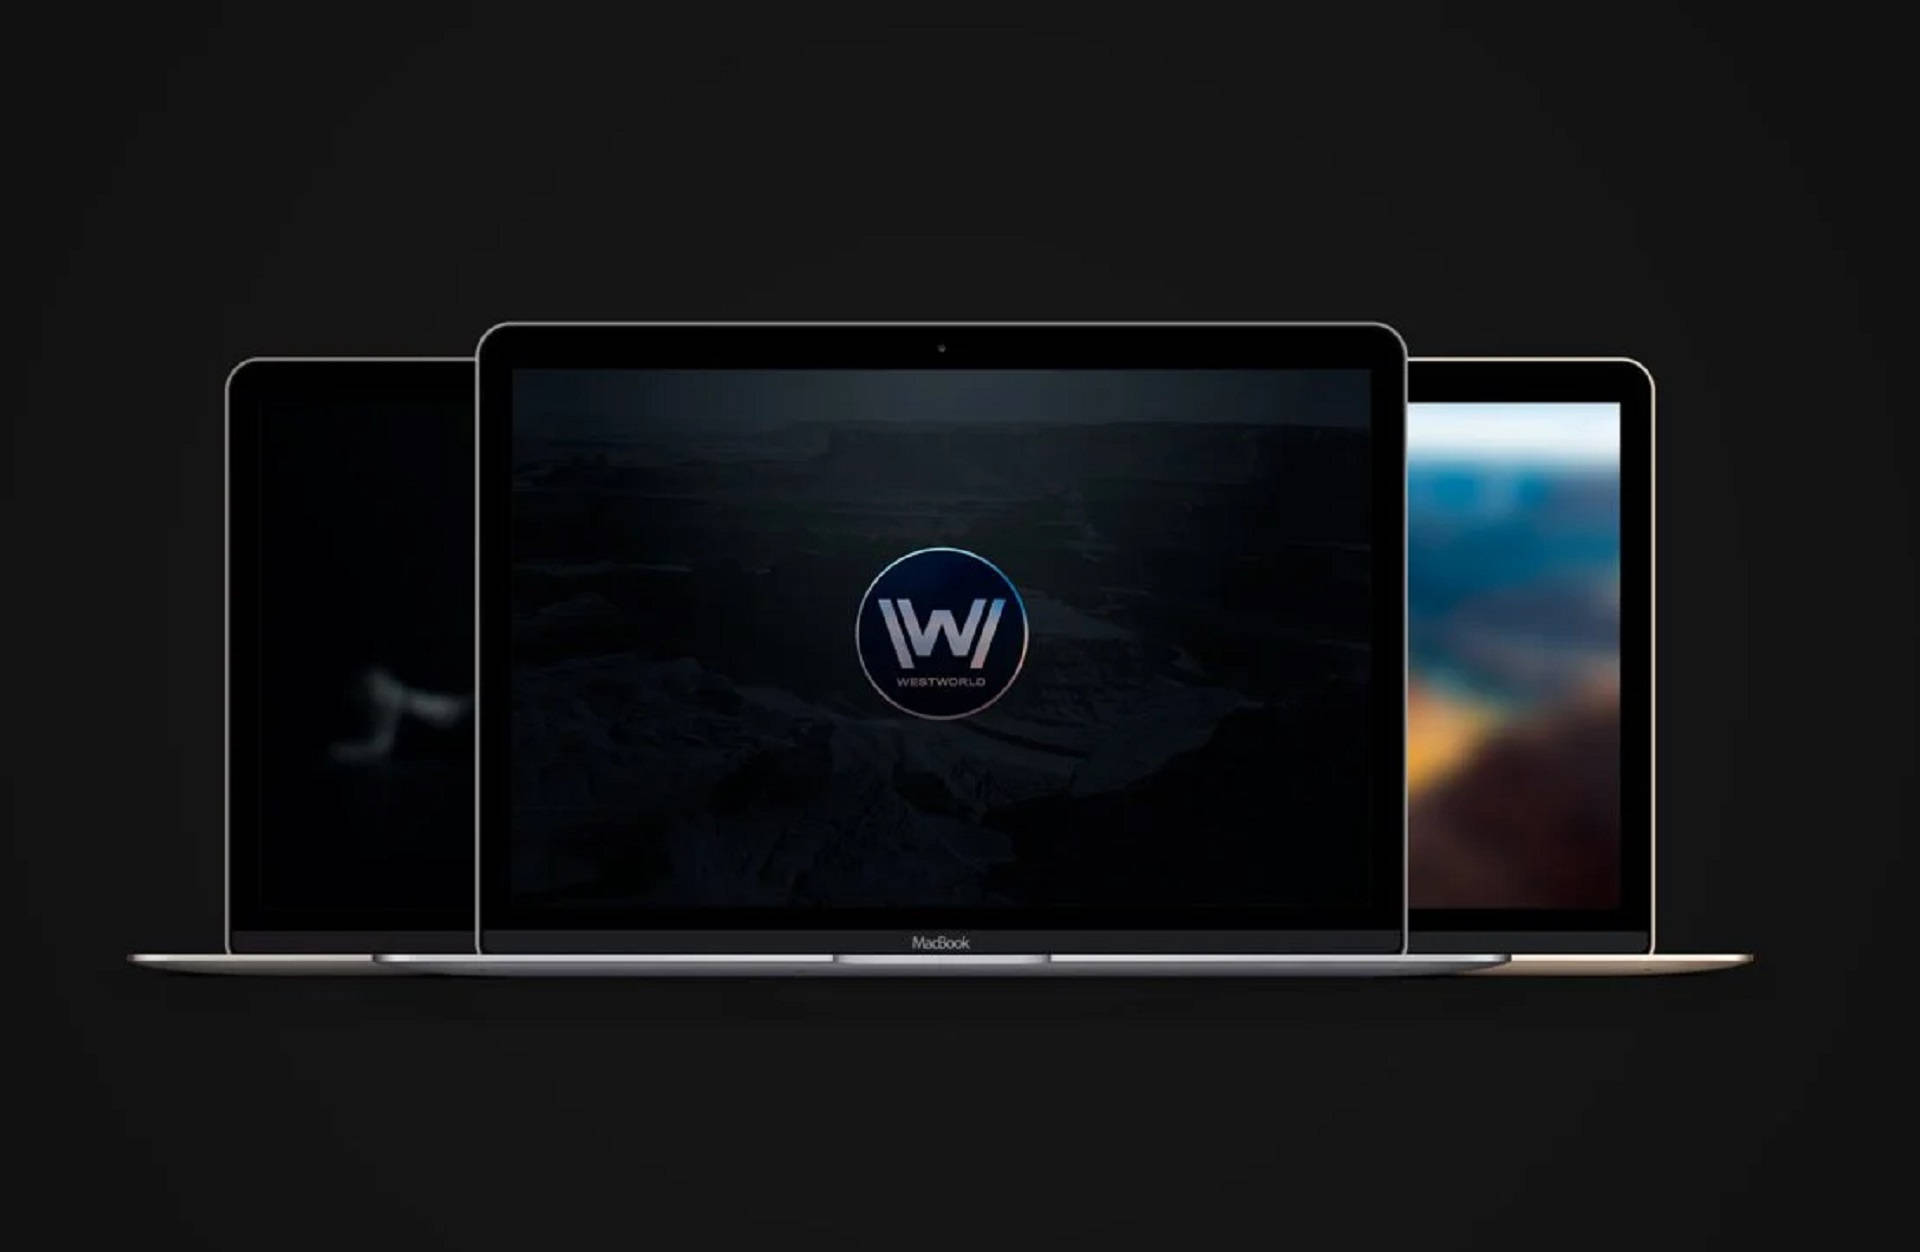 Westworld Icon In Macbook Background